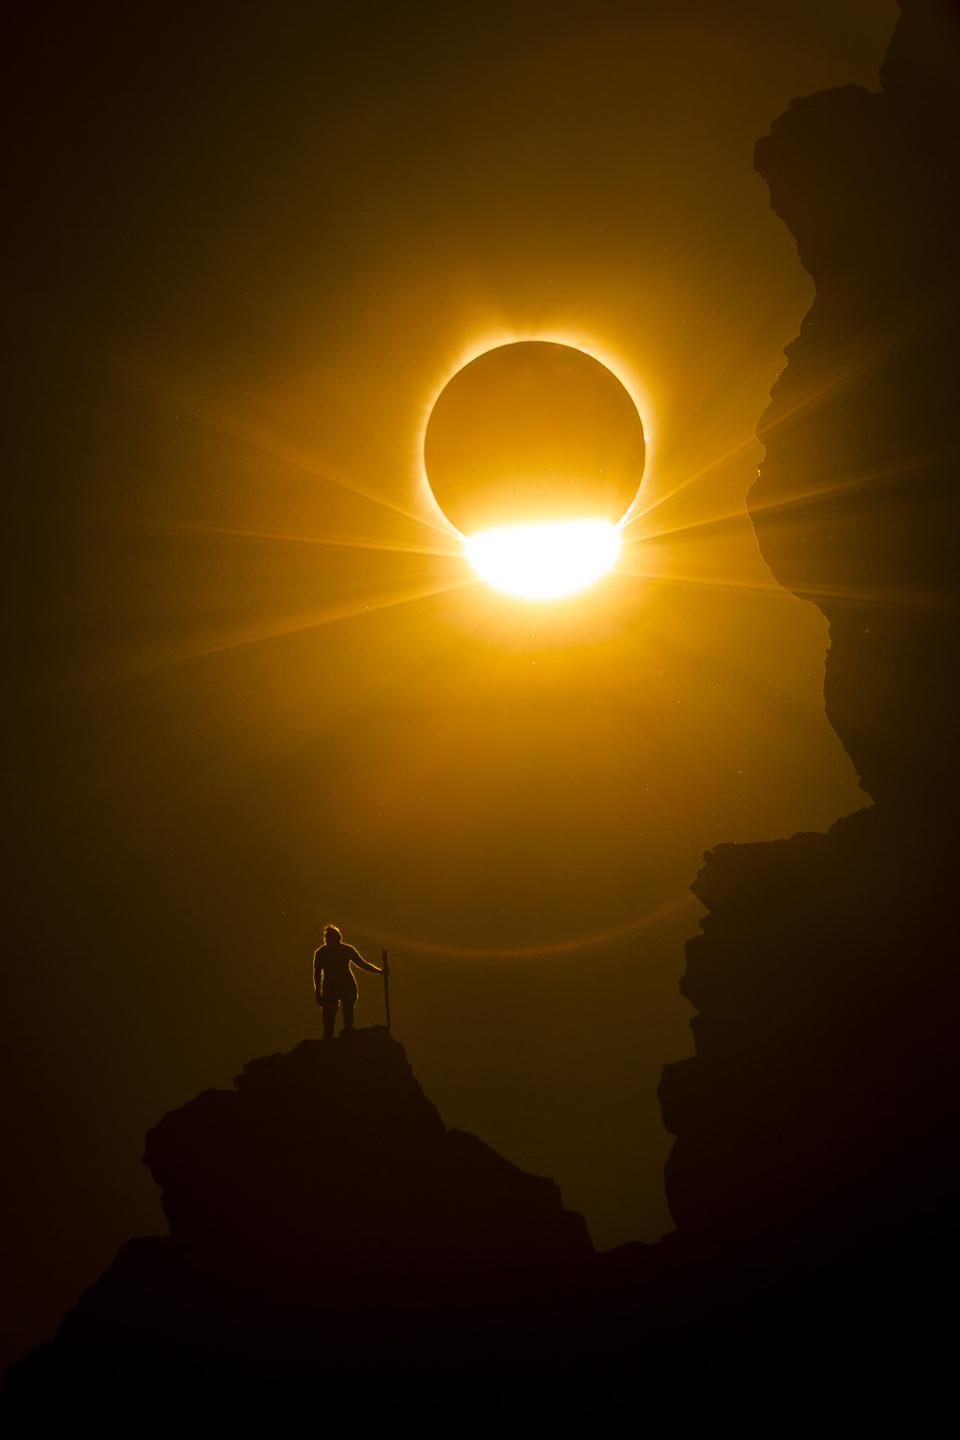 Eine totale Sonnenfinsternis am 21. August 2017 vom Smith Rock National Park, Oregon, USA. 